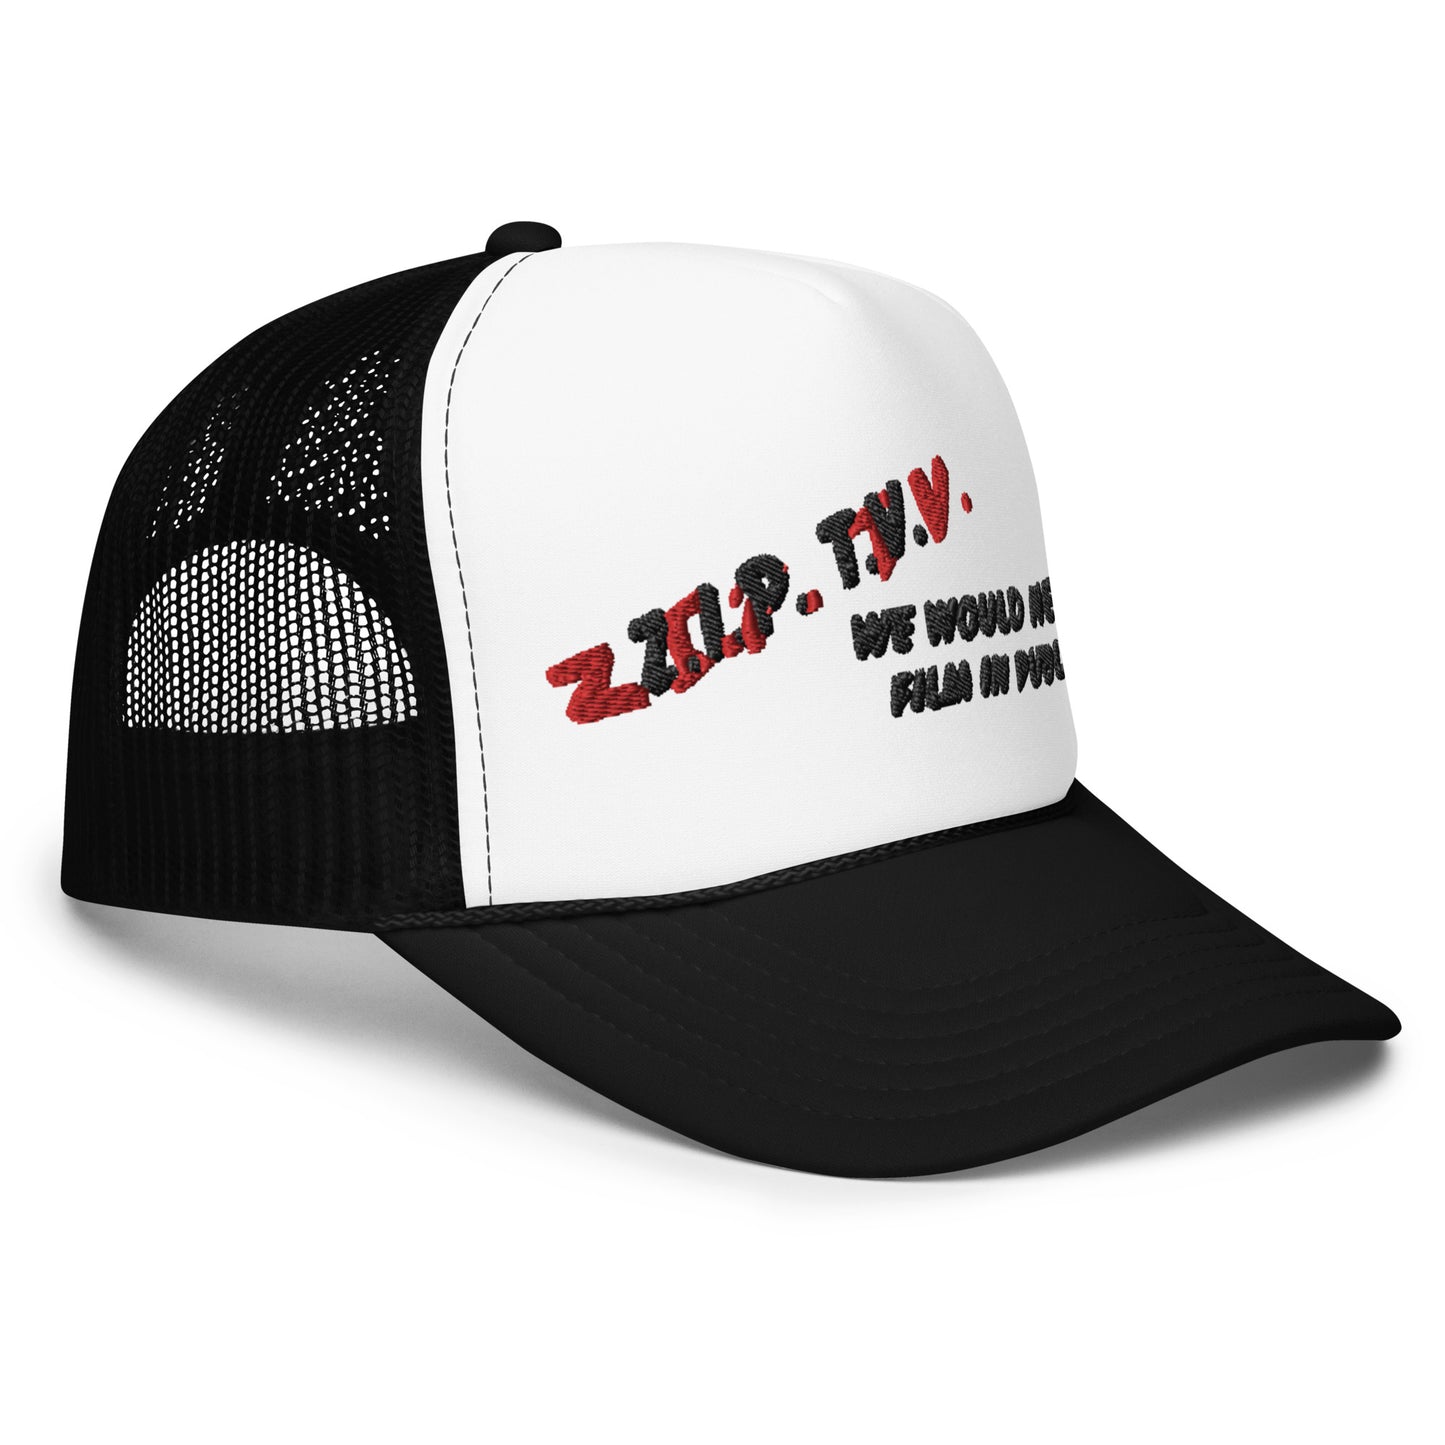 DARE WWNFIP Trucker Hat